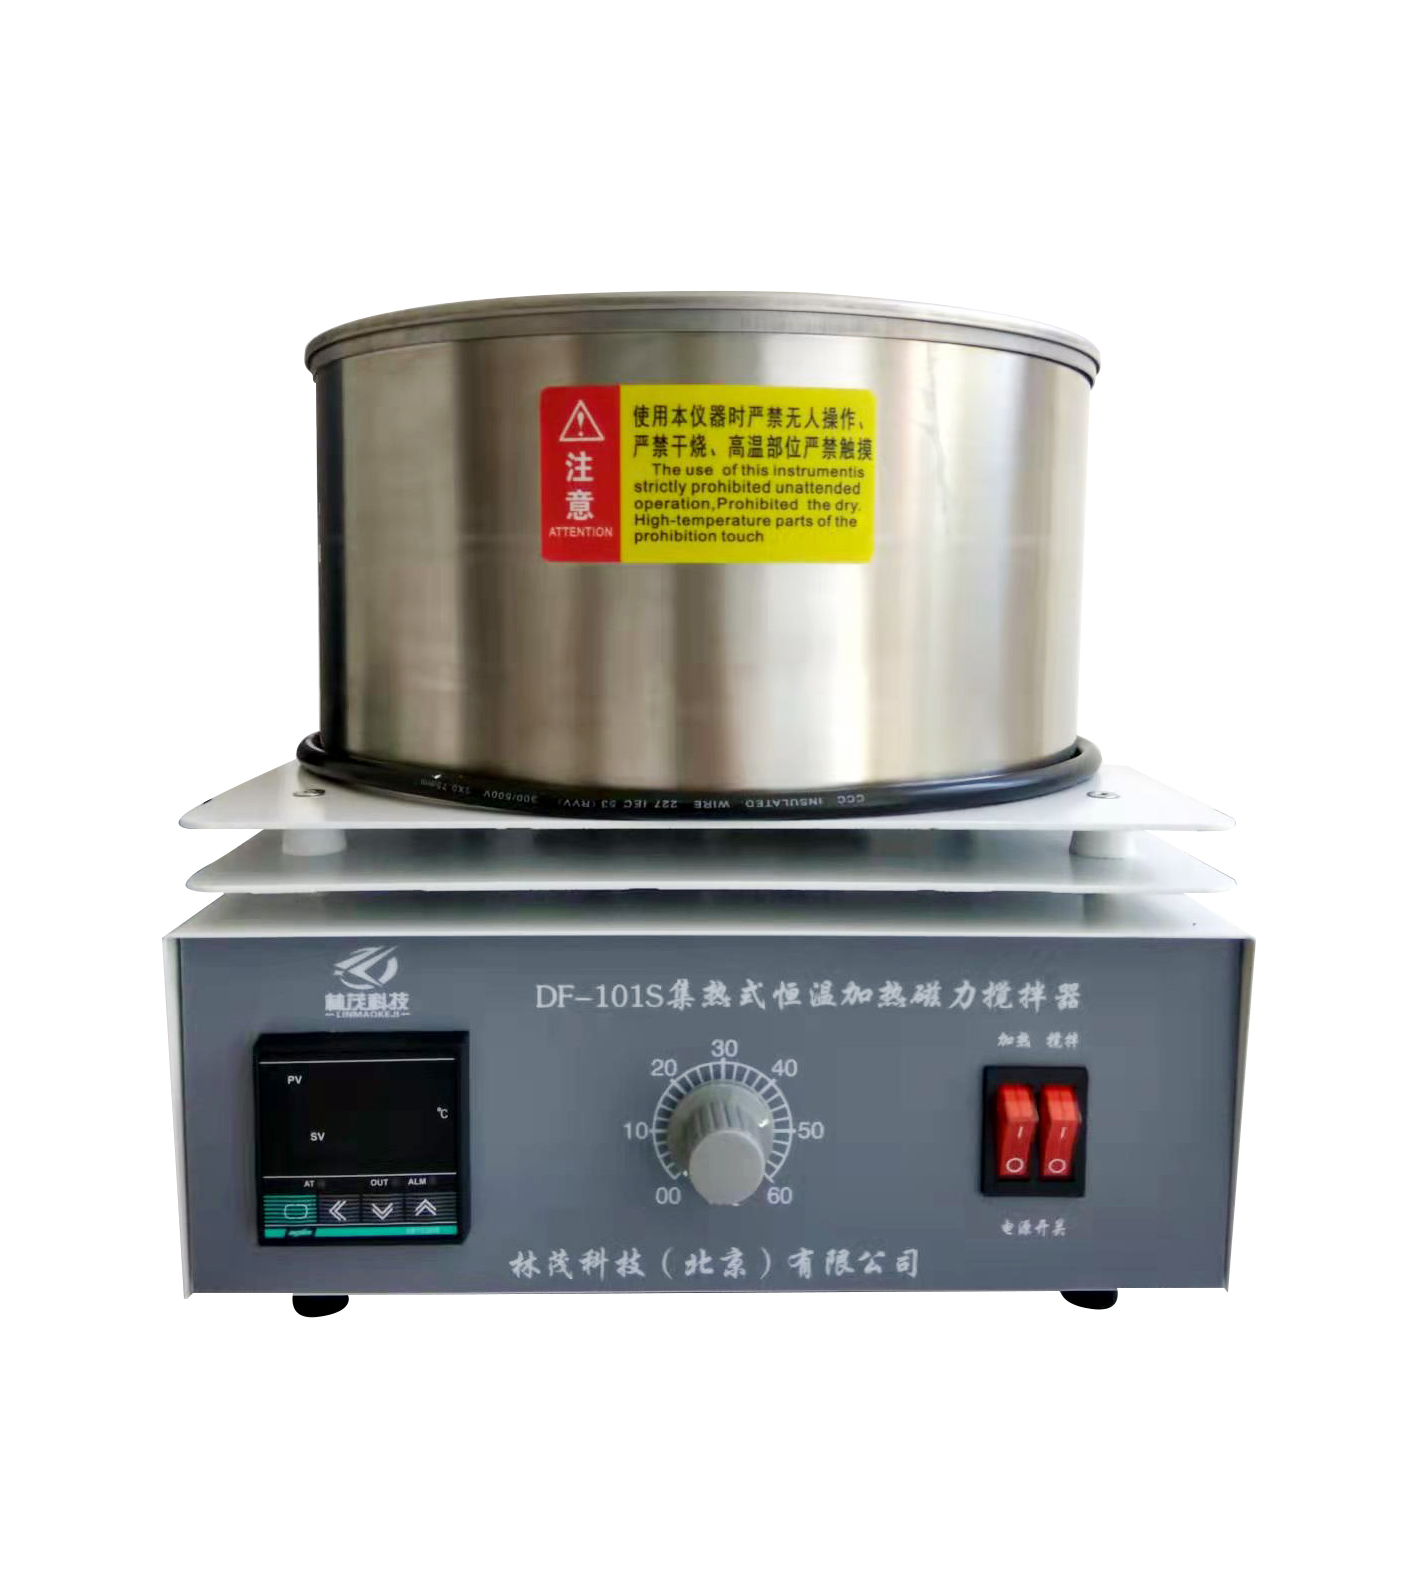 DF-101S 集热式磁力加热搅拌器